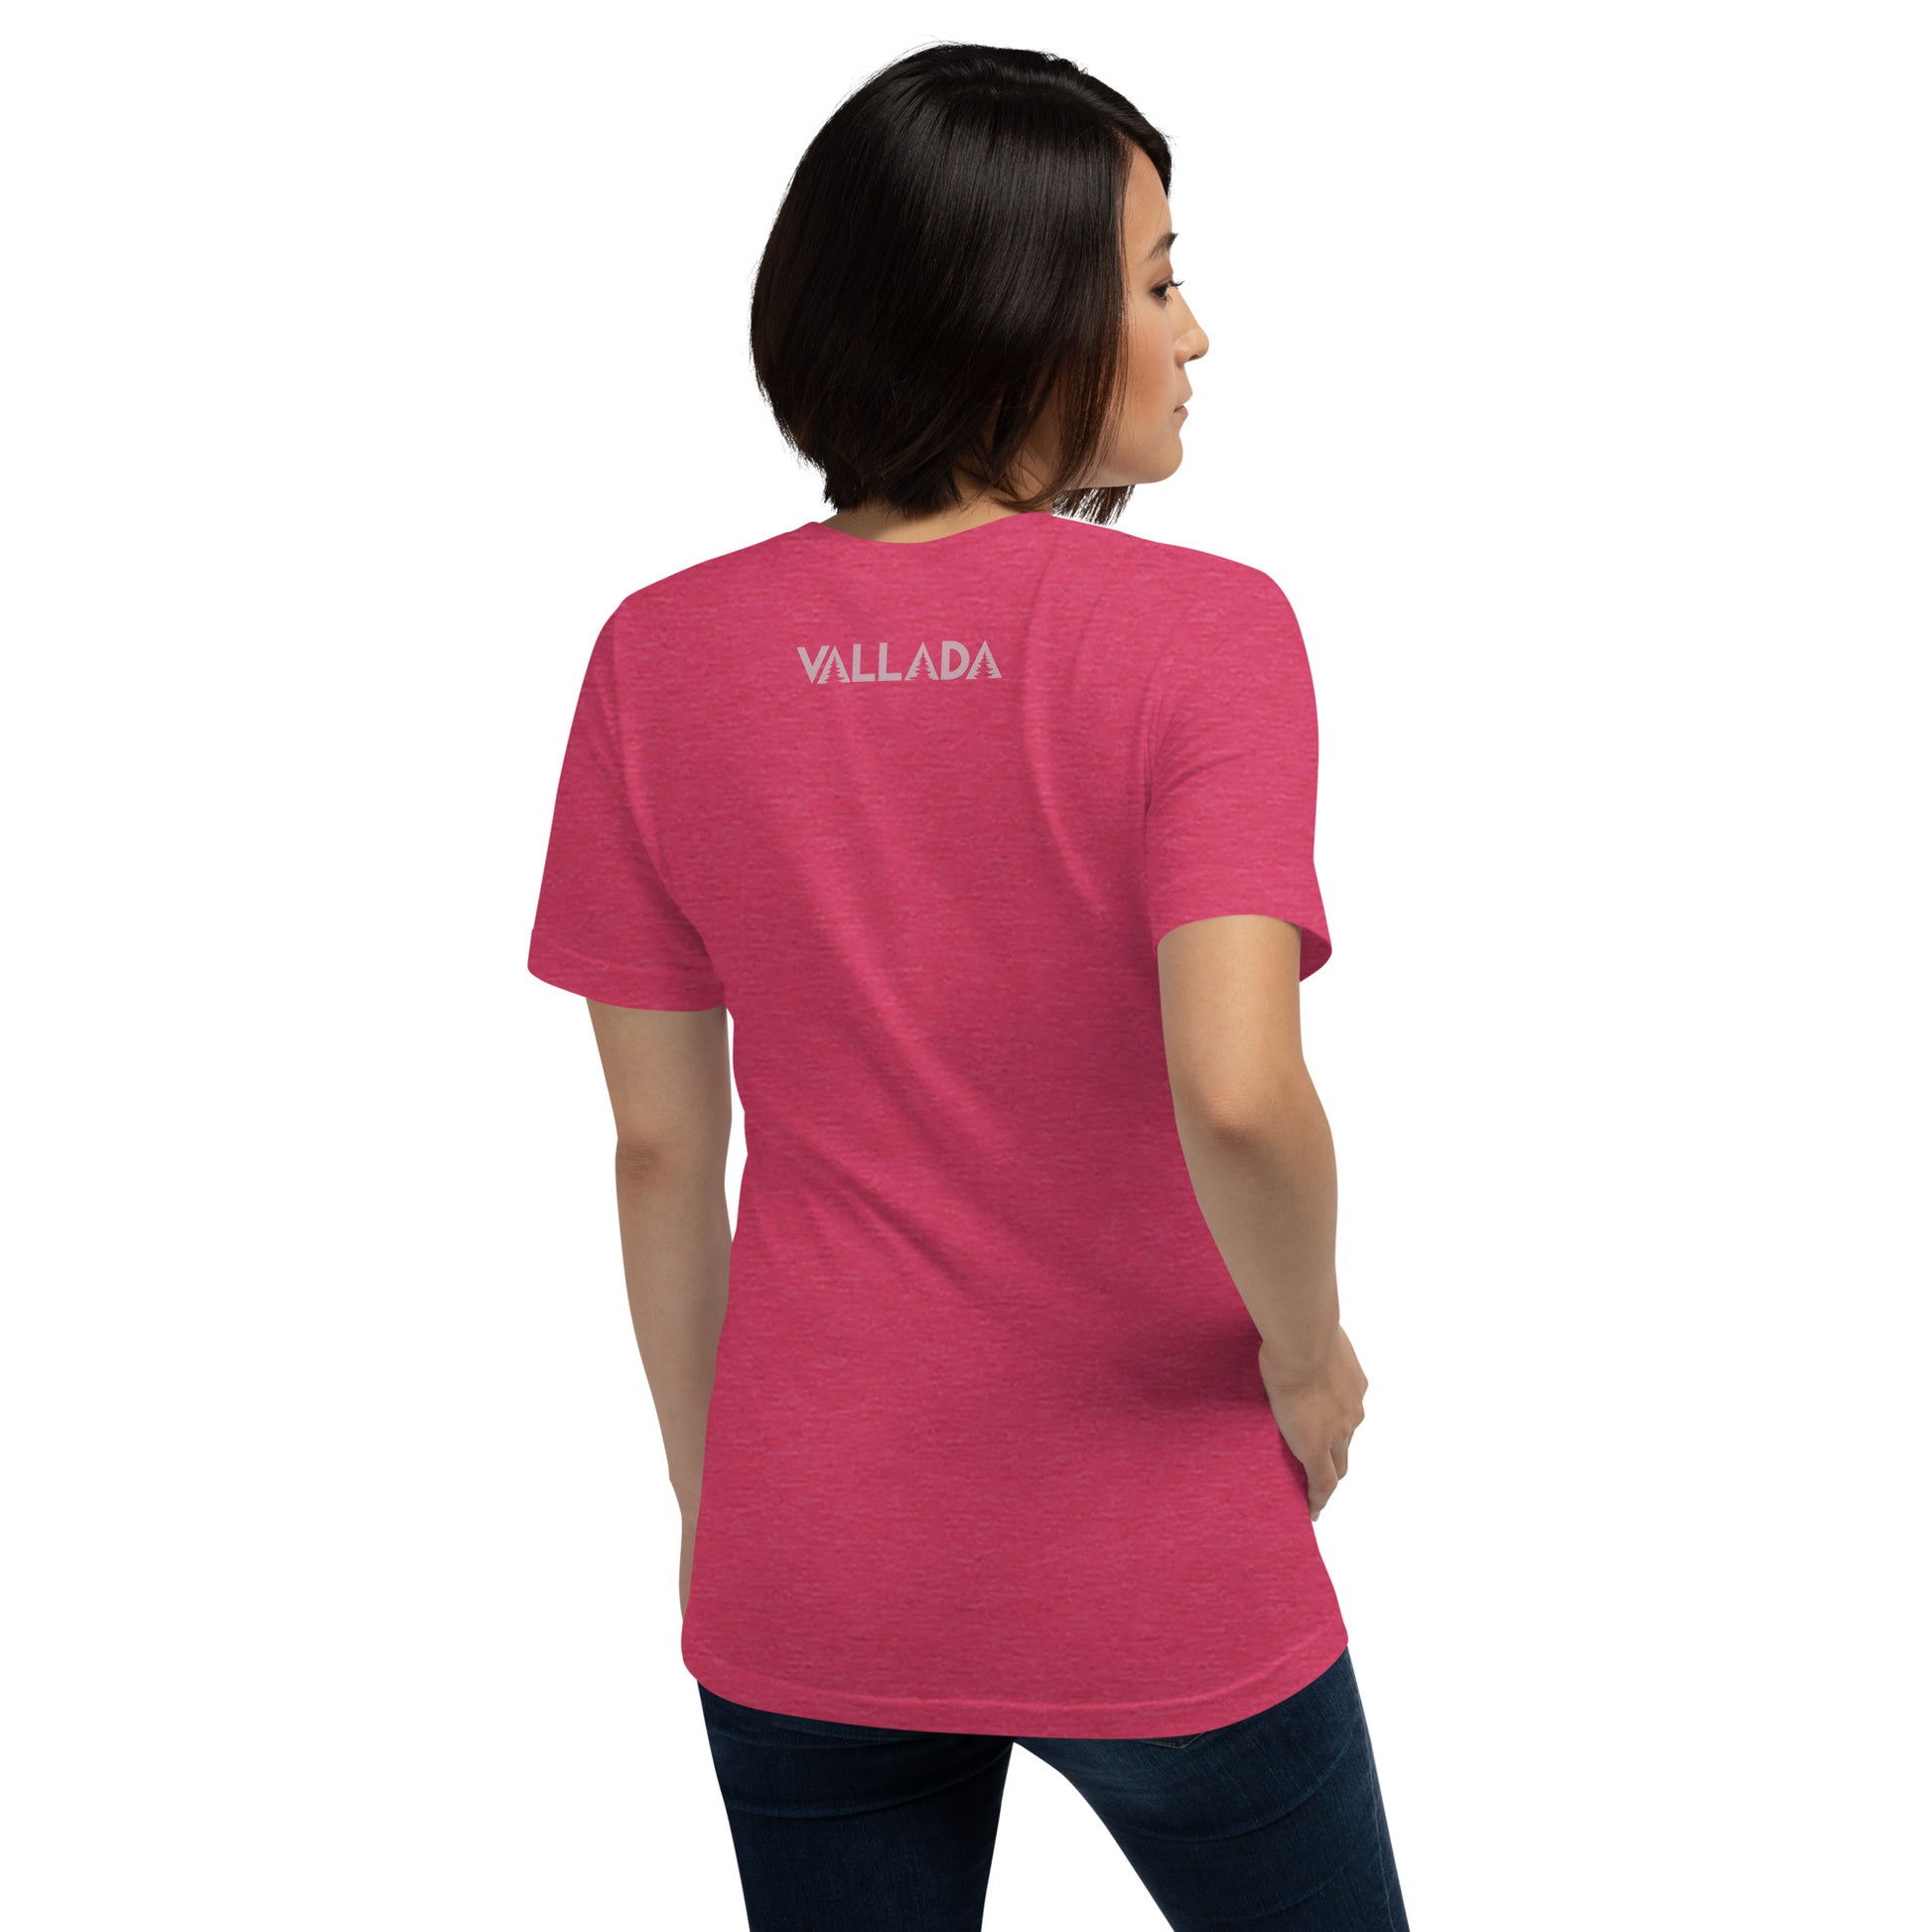 Diese Wanderfreundin trägt ein rotes Damen T-Shirt aus der Säntis-Collection von Vallada. Sie steht mit dem Rücken zur Kamera, so dass wir das Vallada-Logo sehen.